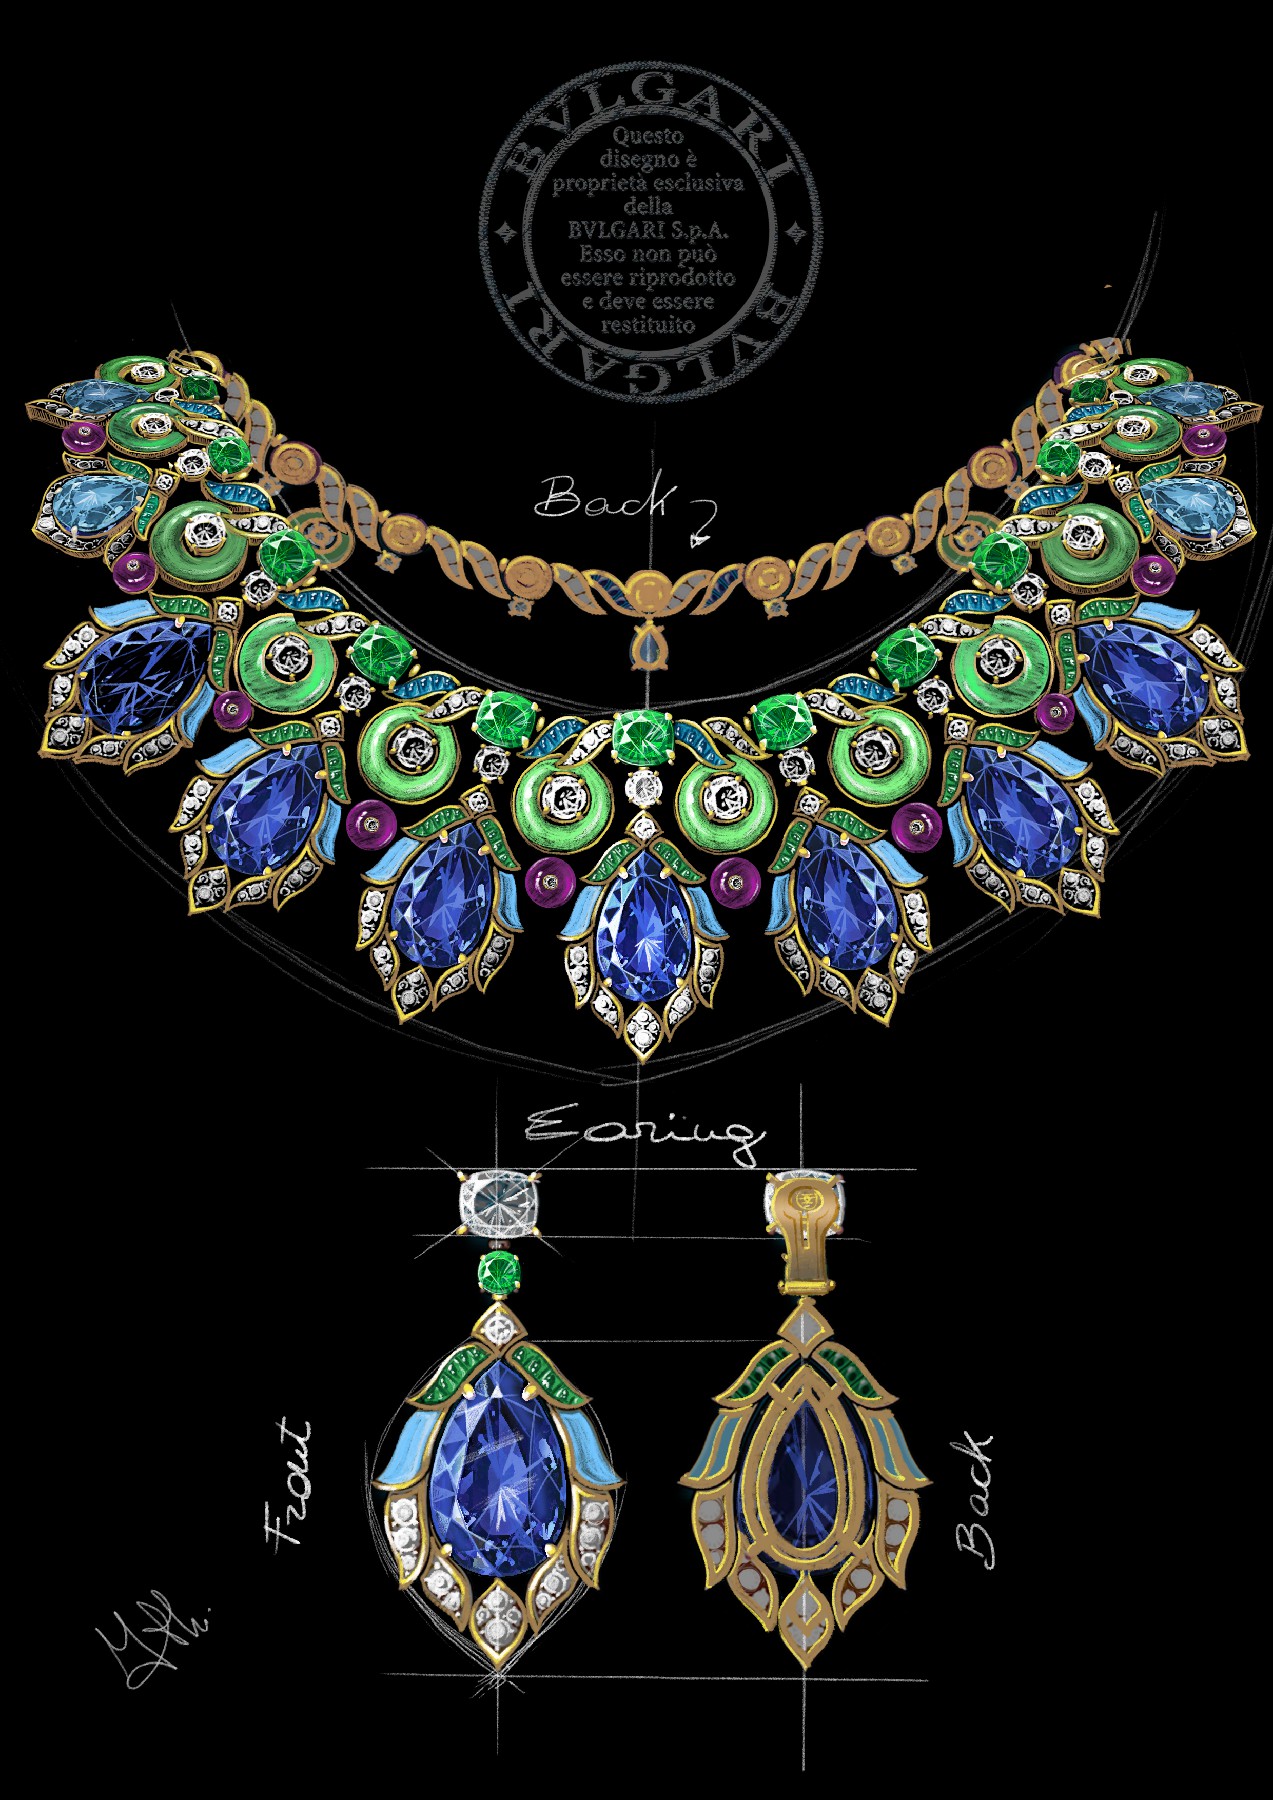 玳美雅_Damiani玳美雅Fiocco高级珠宝 唤醒来自欧洲宫廷时尚的蝴蝶结元素|腕表之家-珠宝